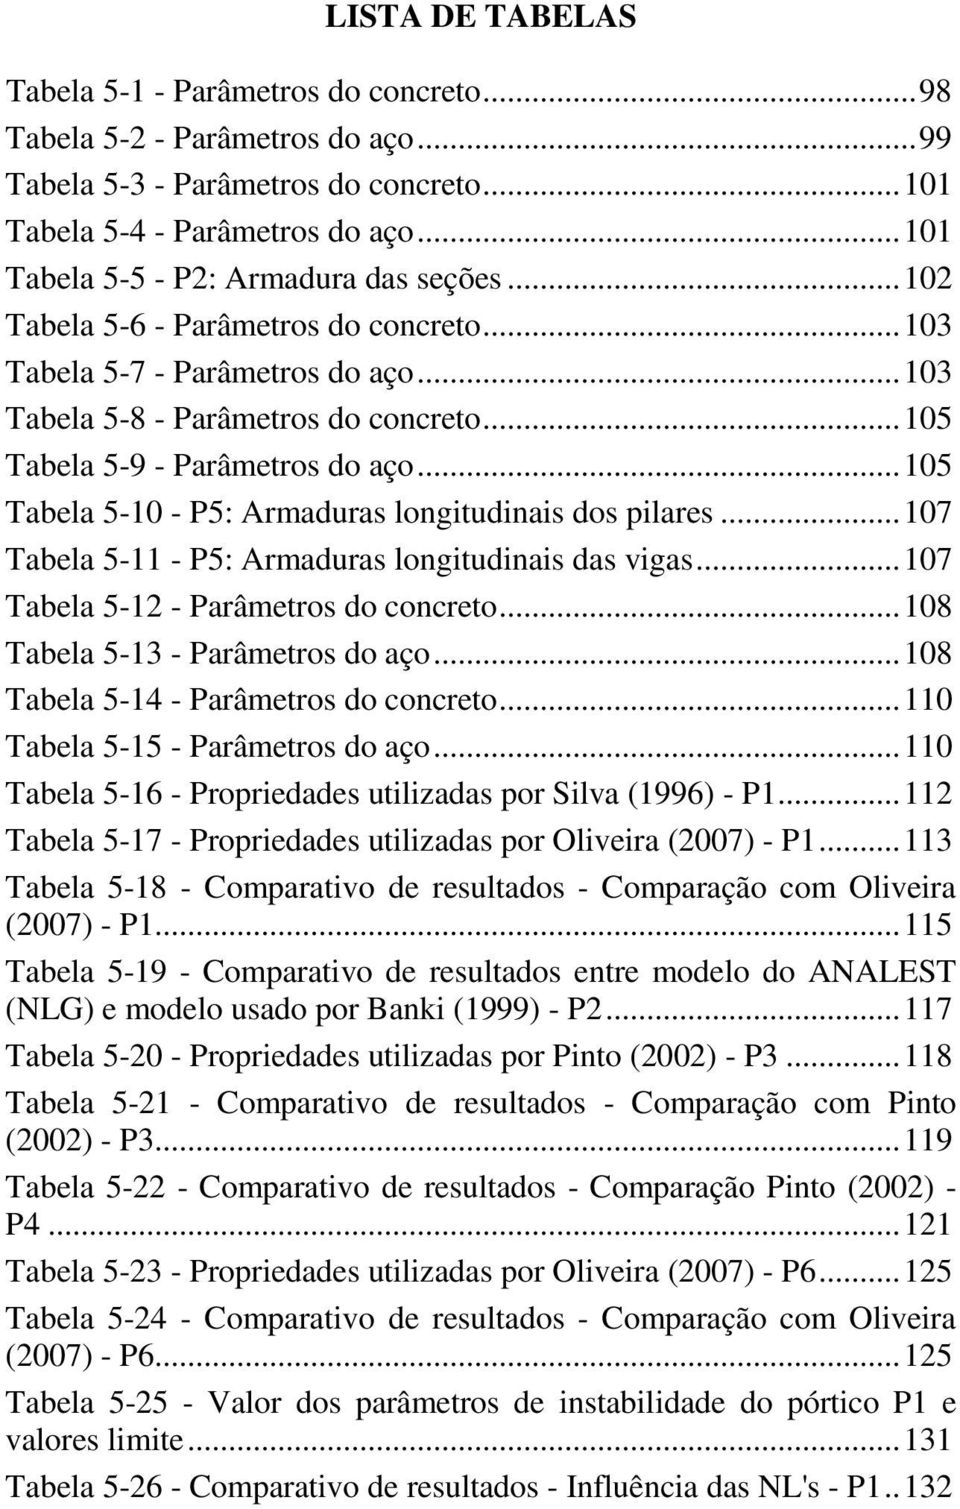 .. 105 Tabela 5-9 - Parâmetros do aço... 105 Tabela 5-10 - P5: Armaduras longitudinais dos pilares... 107 Tabela 5-11 - P5: Armaduras longitudinais das vigas... 107 Tabela 5-1 - Parâmetros do concreto.